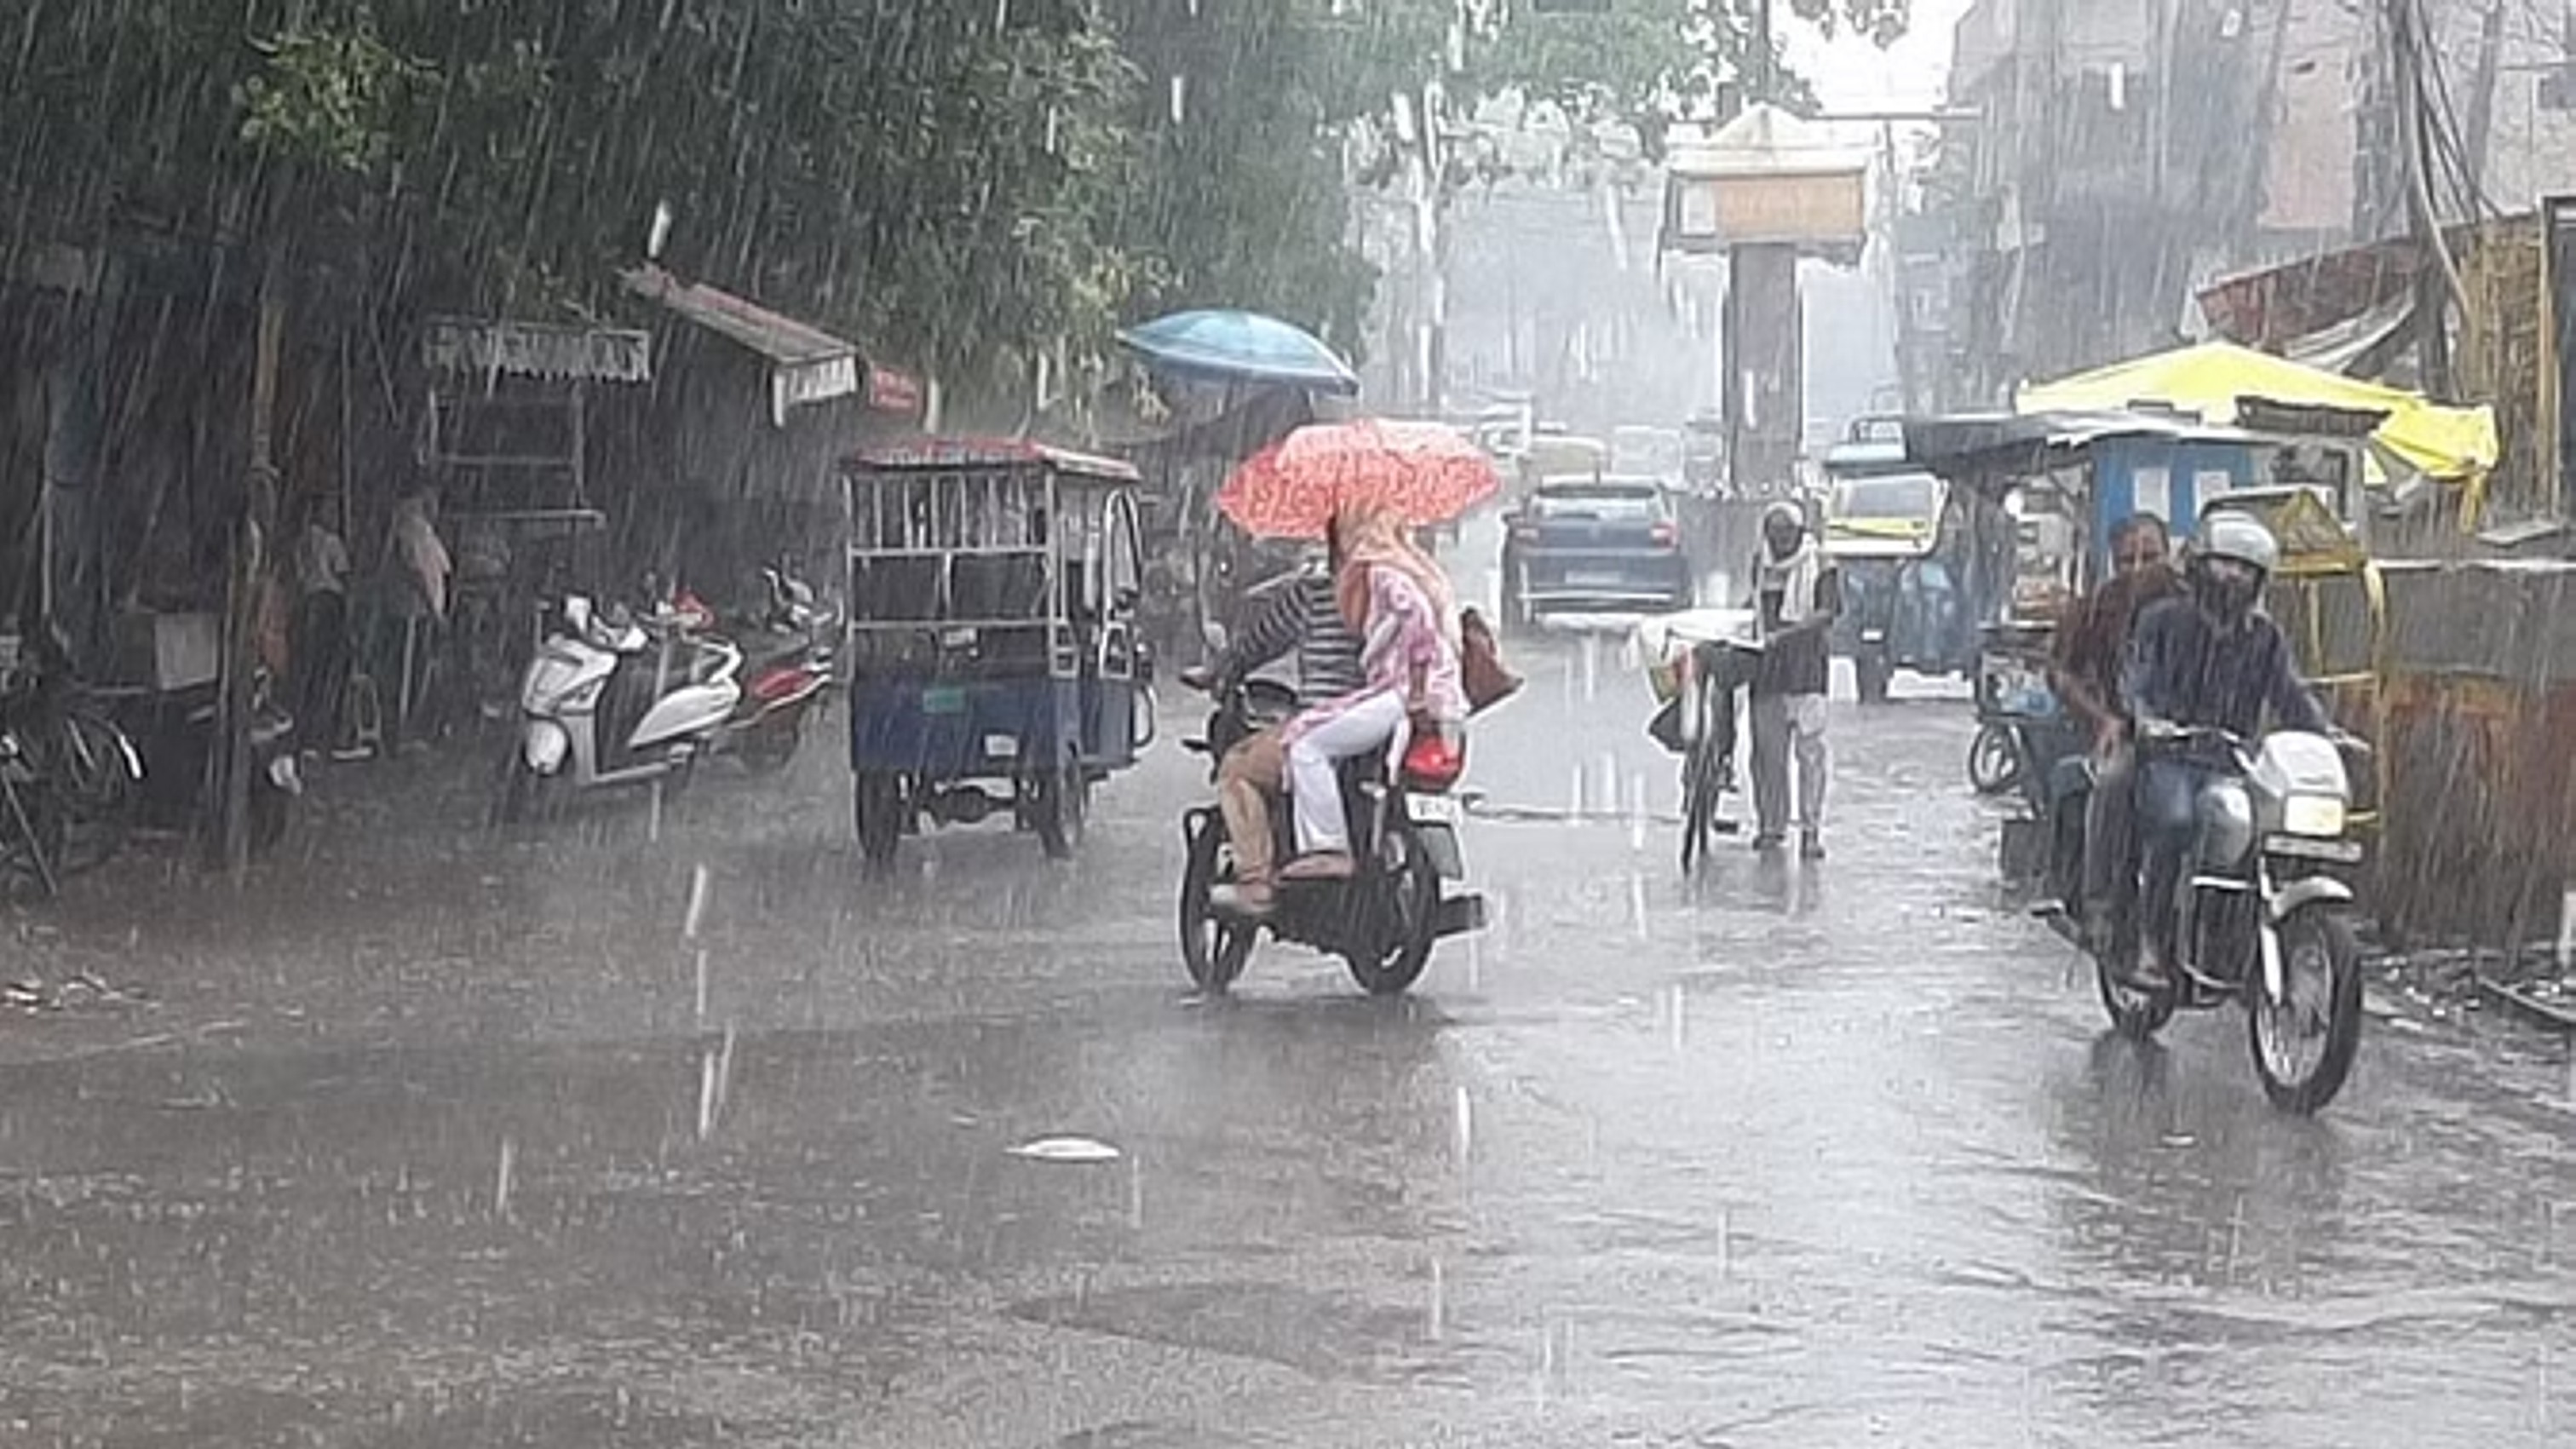 दिल्ली-एनसीआर में झमाझम बारिश से मौसम हुआ सुहाना